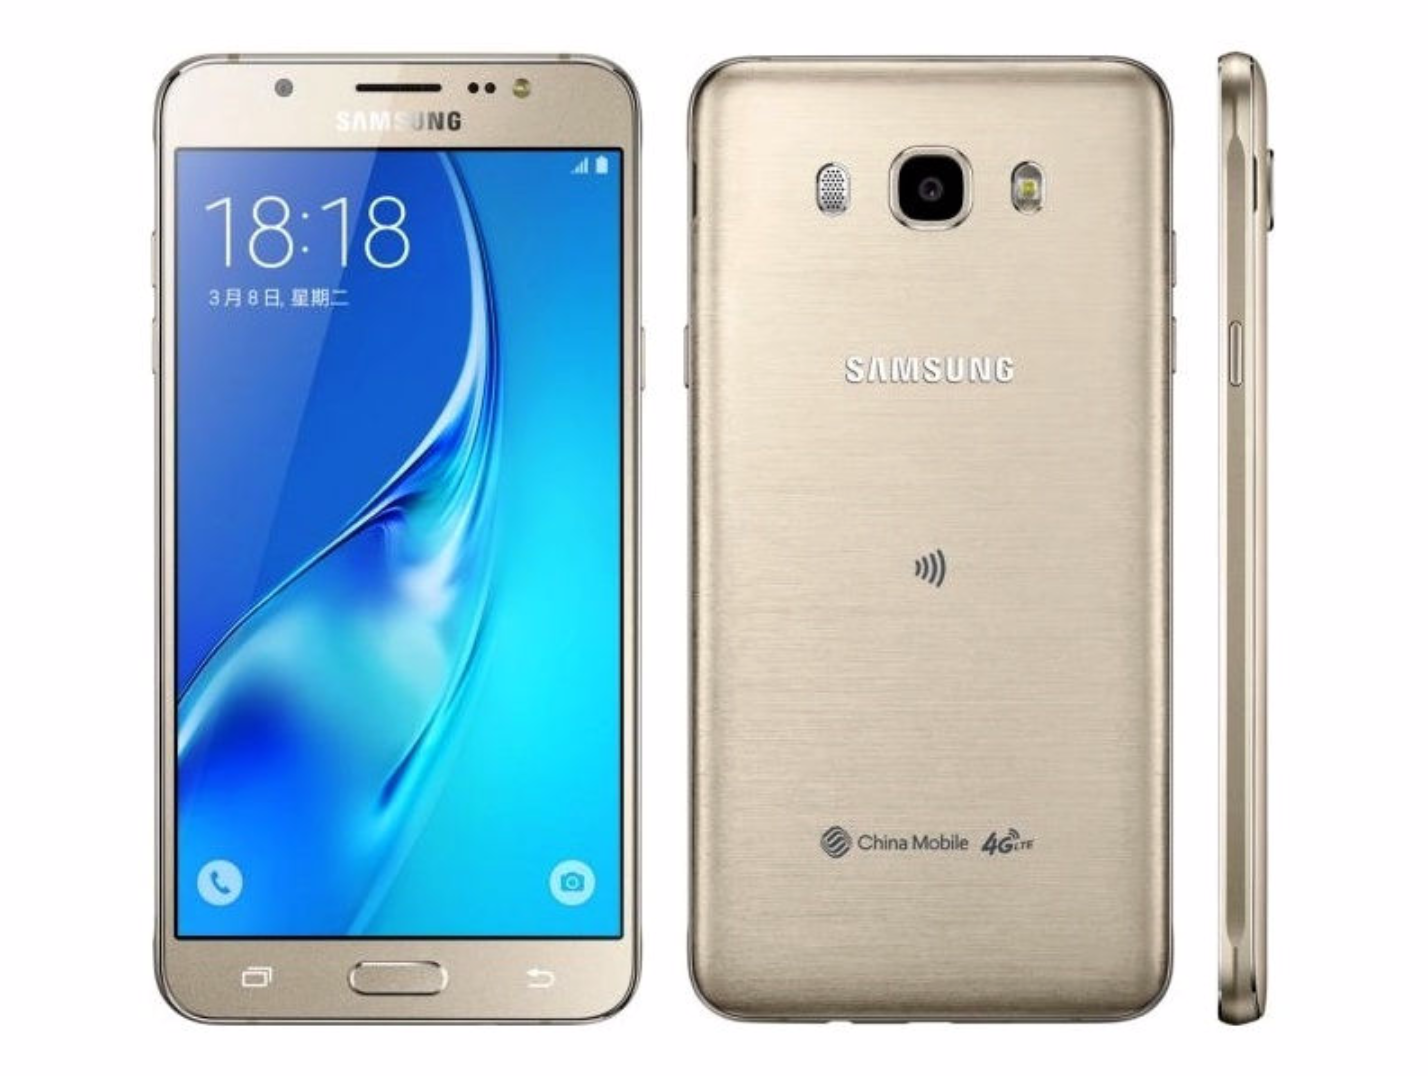 Samsung Yenilenmiş Galaxy J7 Prime Gold 16 GB Fiyatı, Yorumları - Trendyol